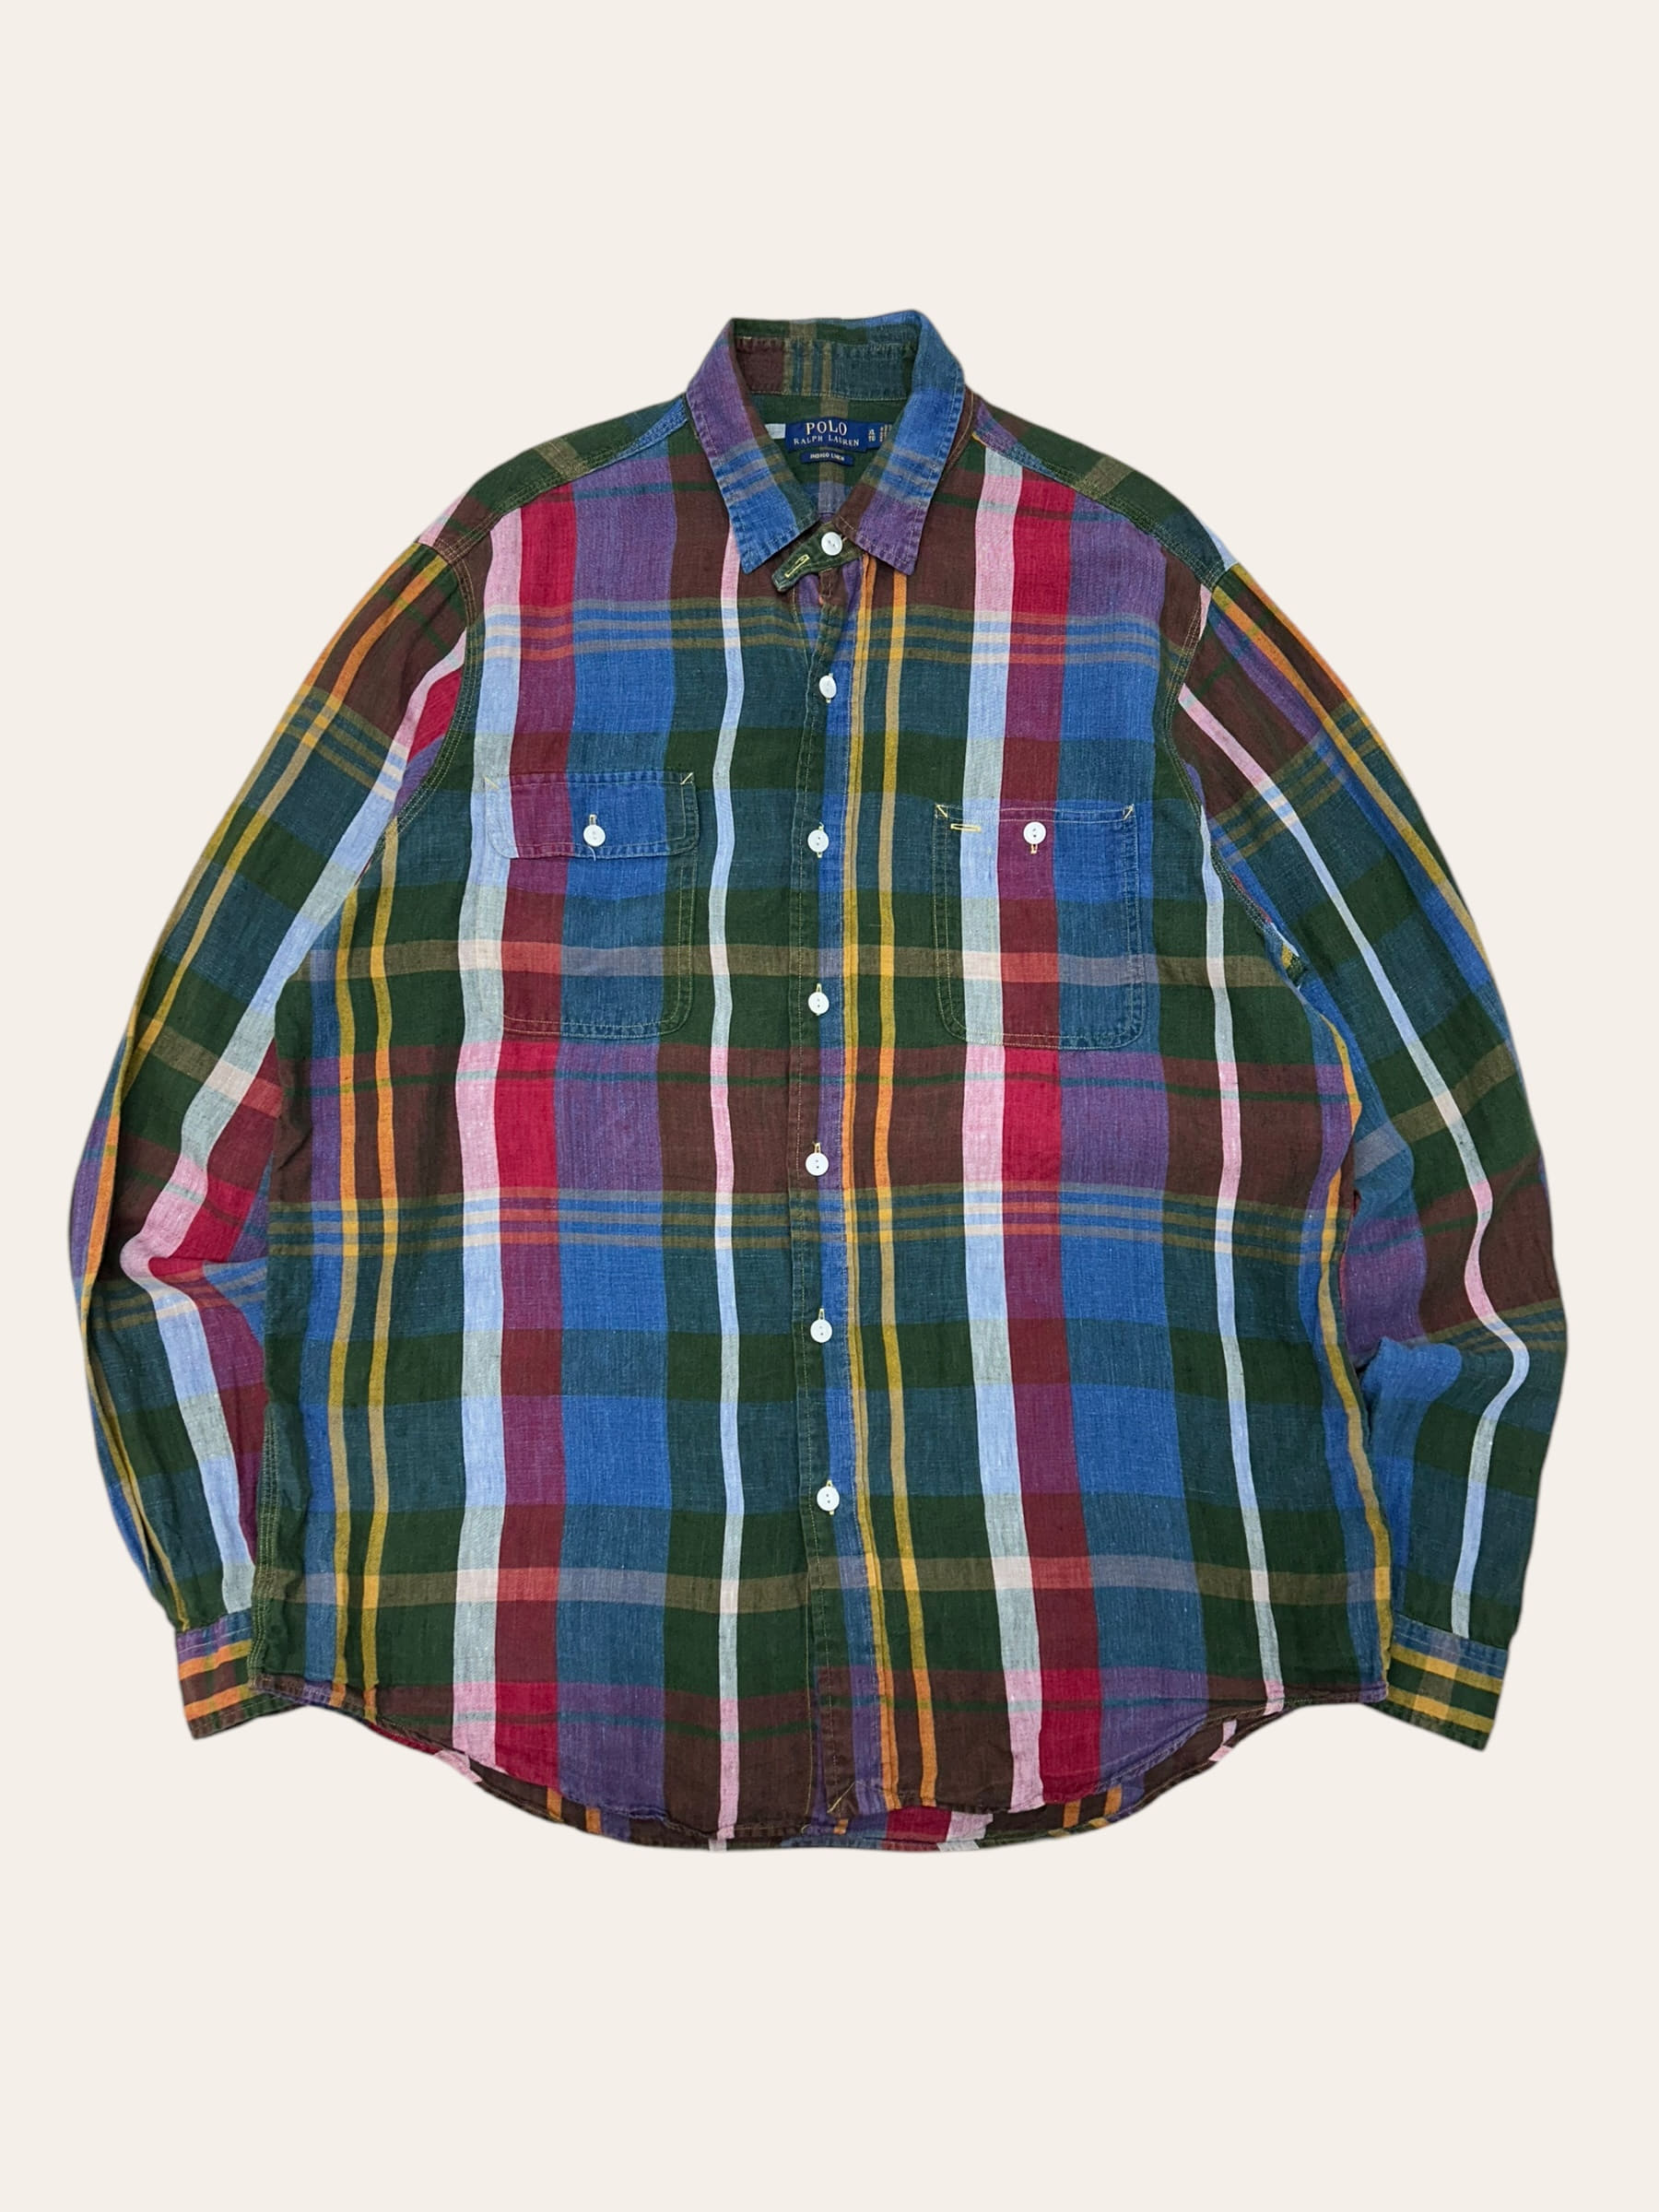 Polo ralph lauren multicolor madras check indigo linen work shirt XL